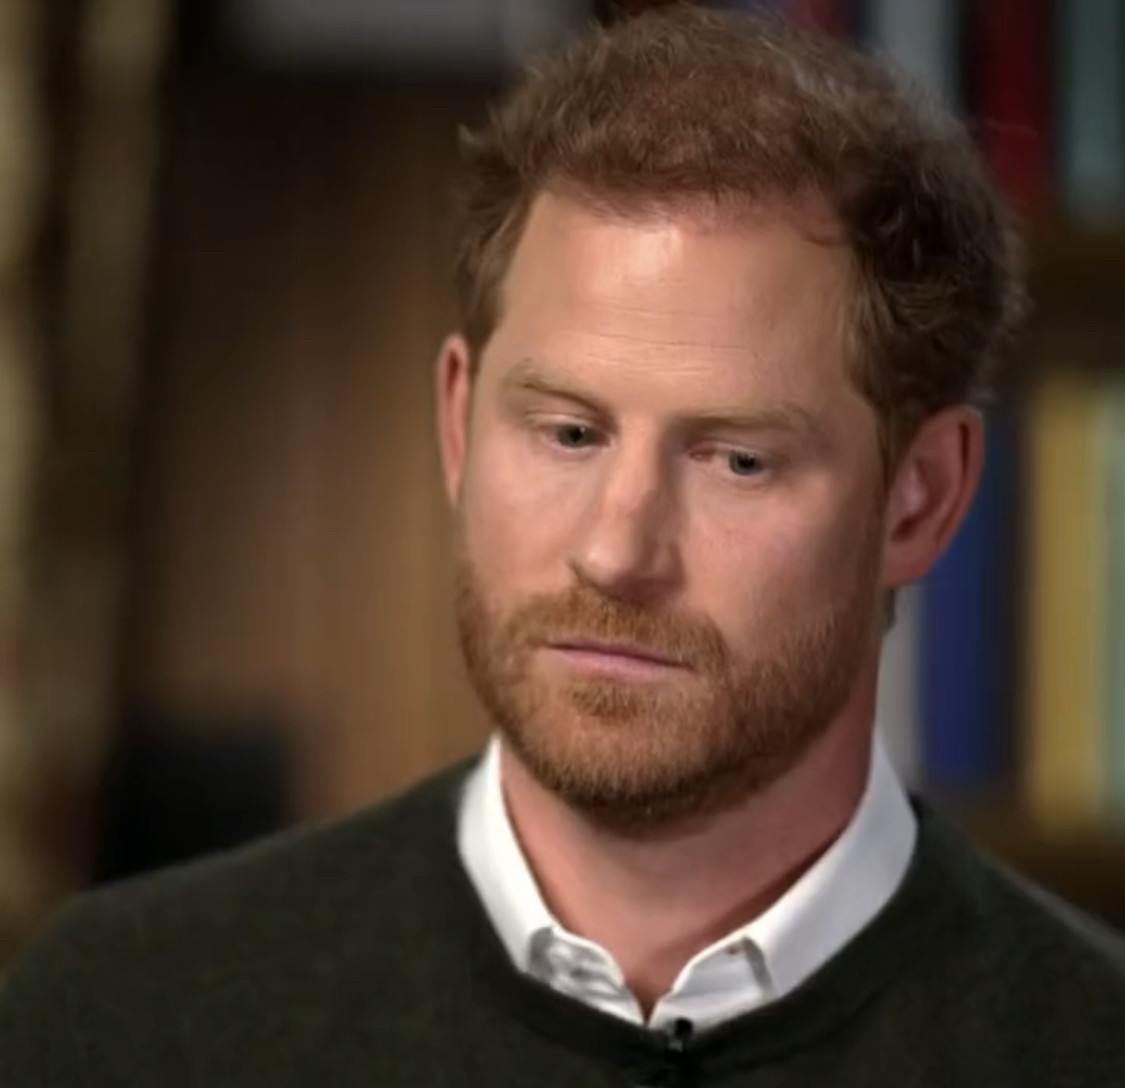 Harry alla CBS su William e Re Carlo III: "Mi hanno tradito. Vorrei una famiglia, non un'istituzione" (VIDEO)